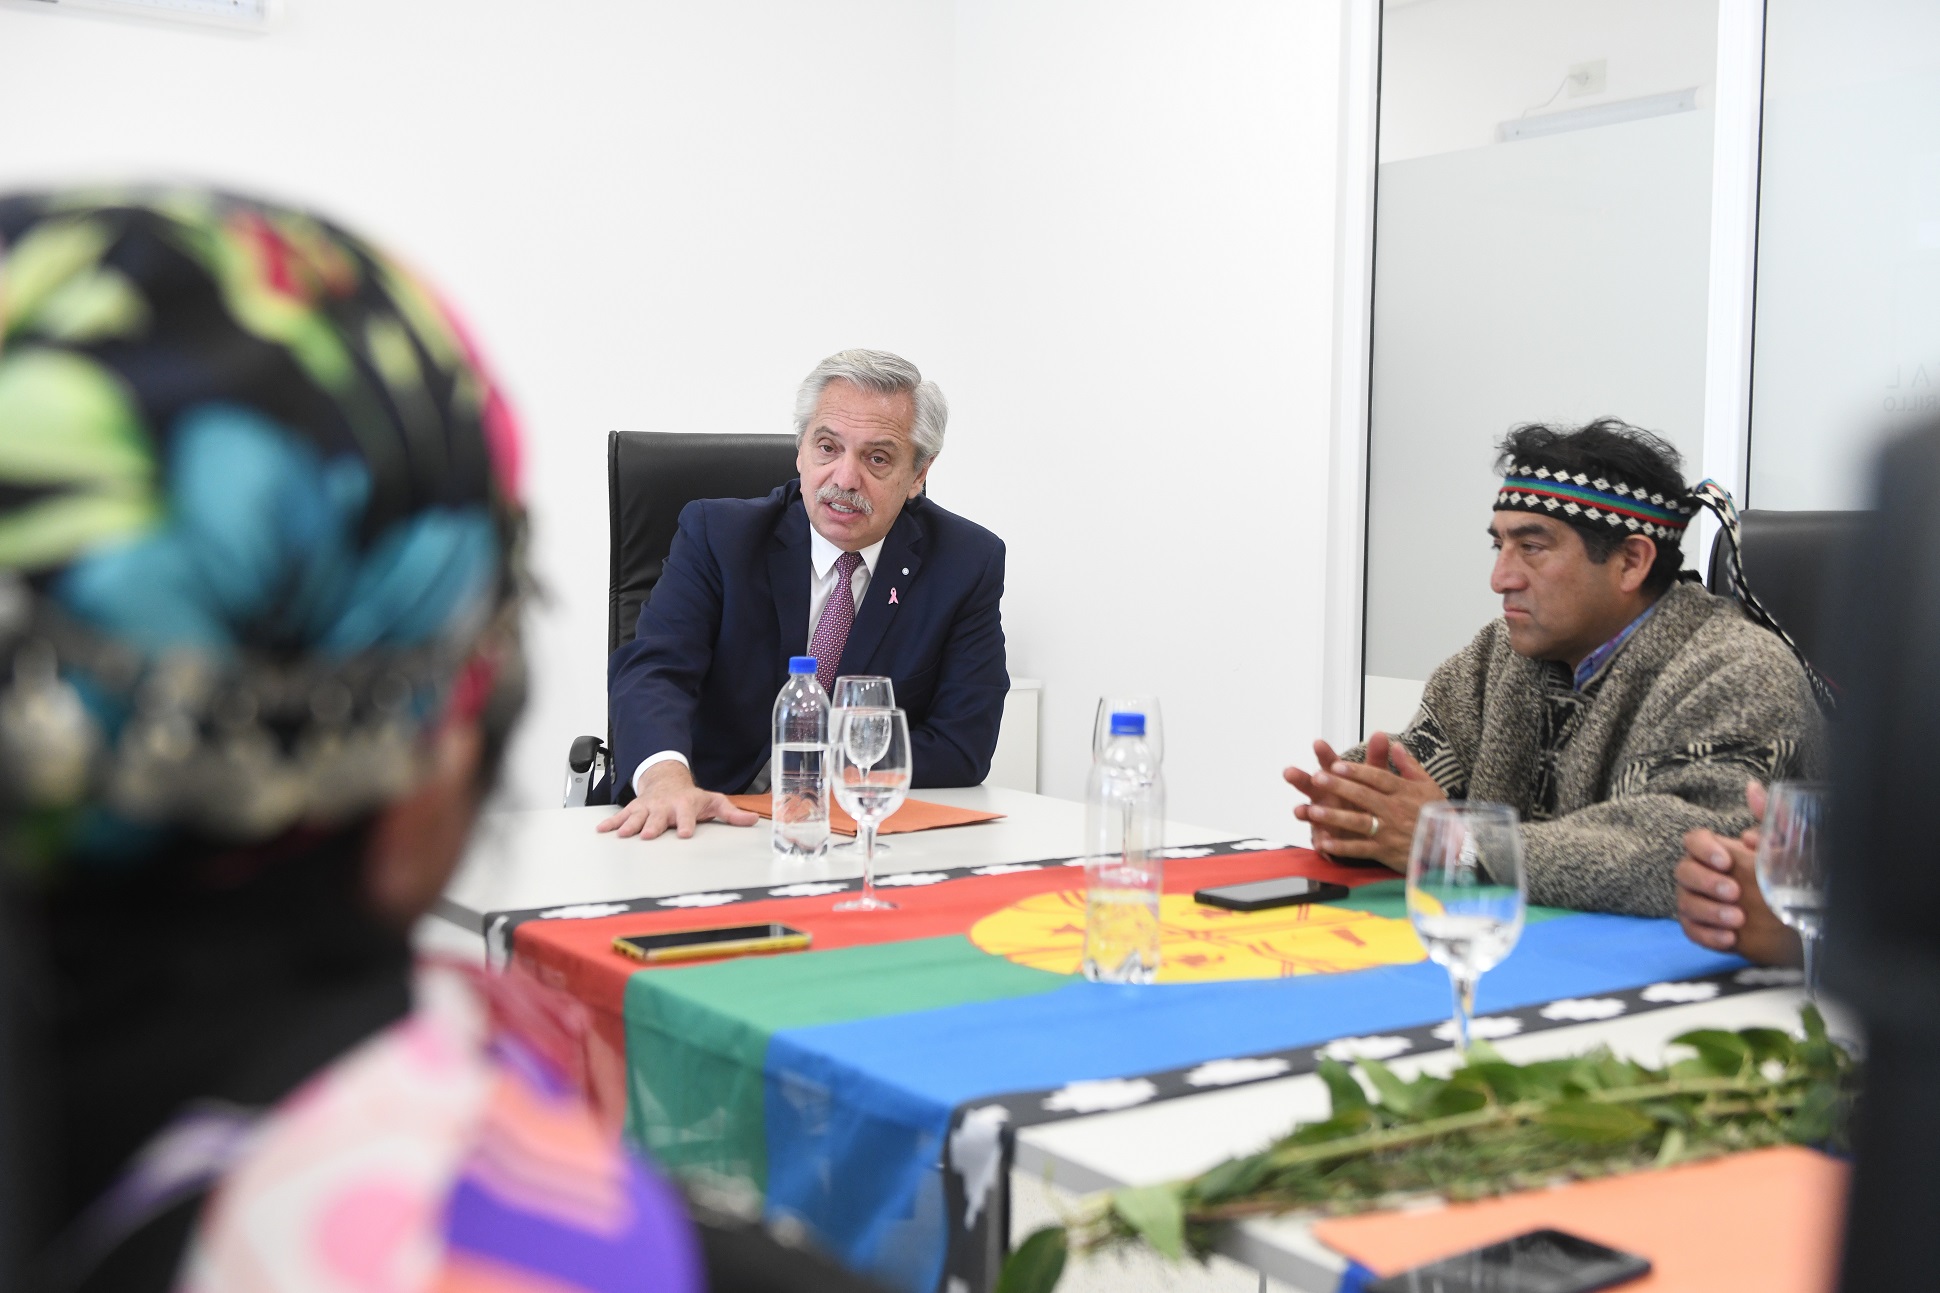 El presidente se reunió con representantes de comunidades mapuches de Neuquén